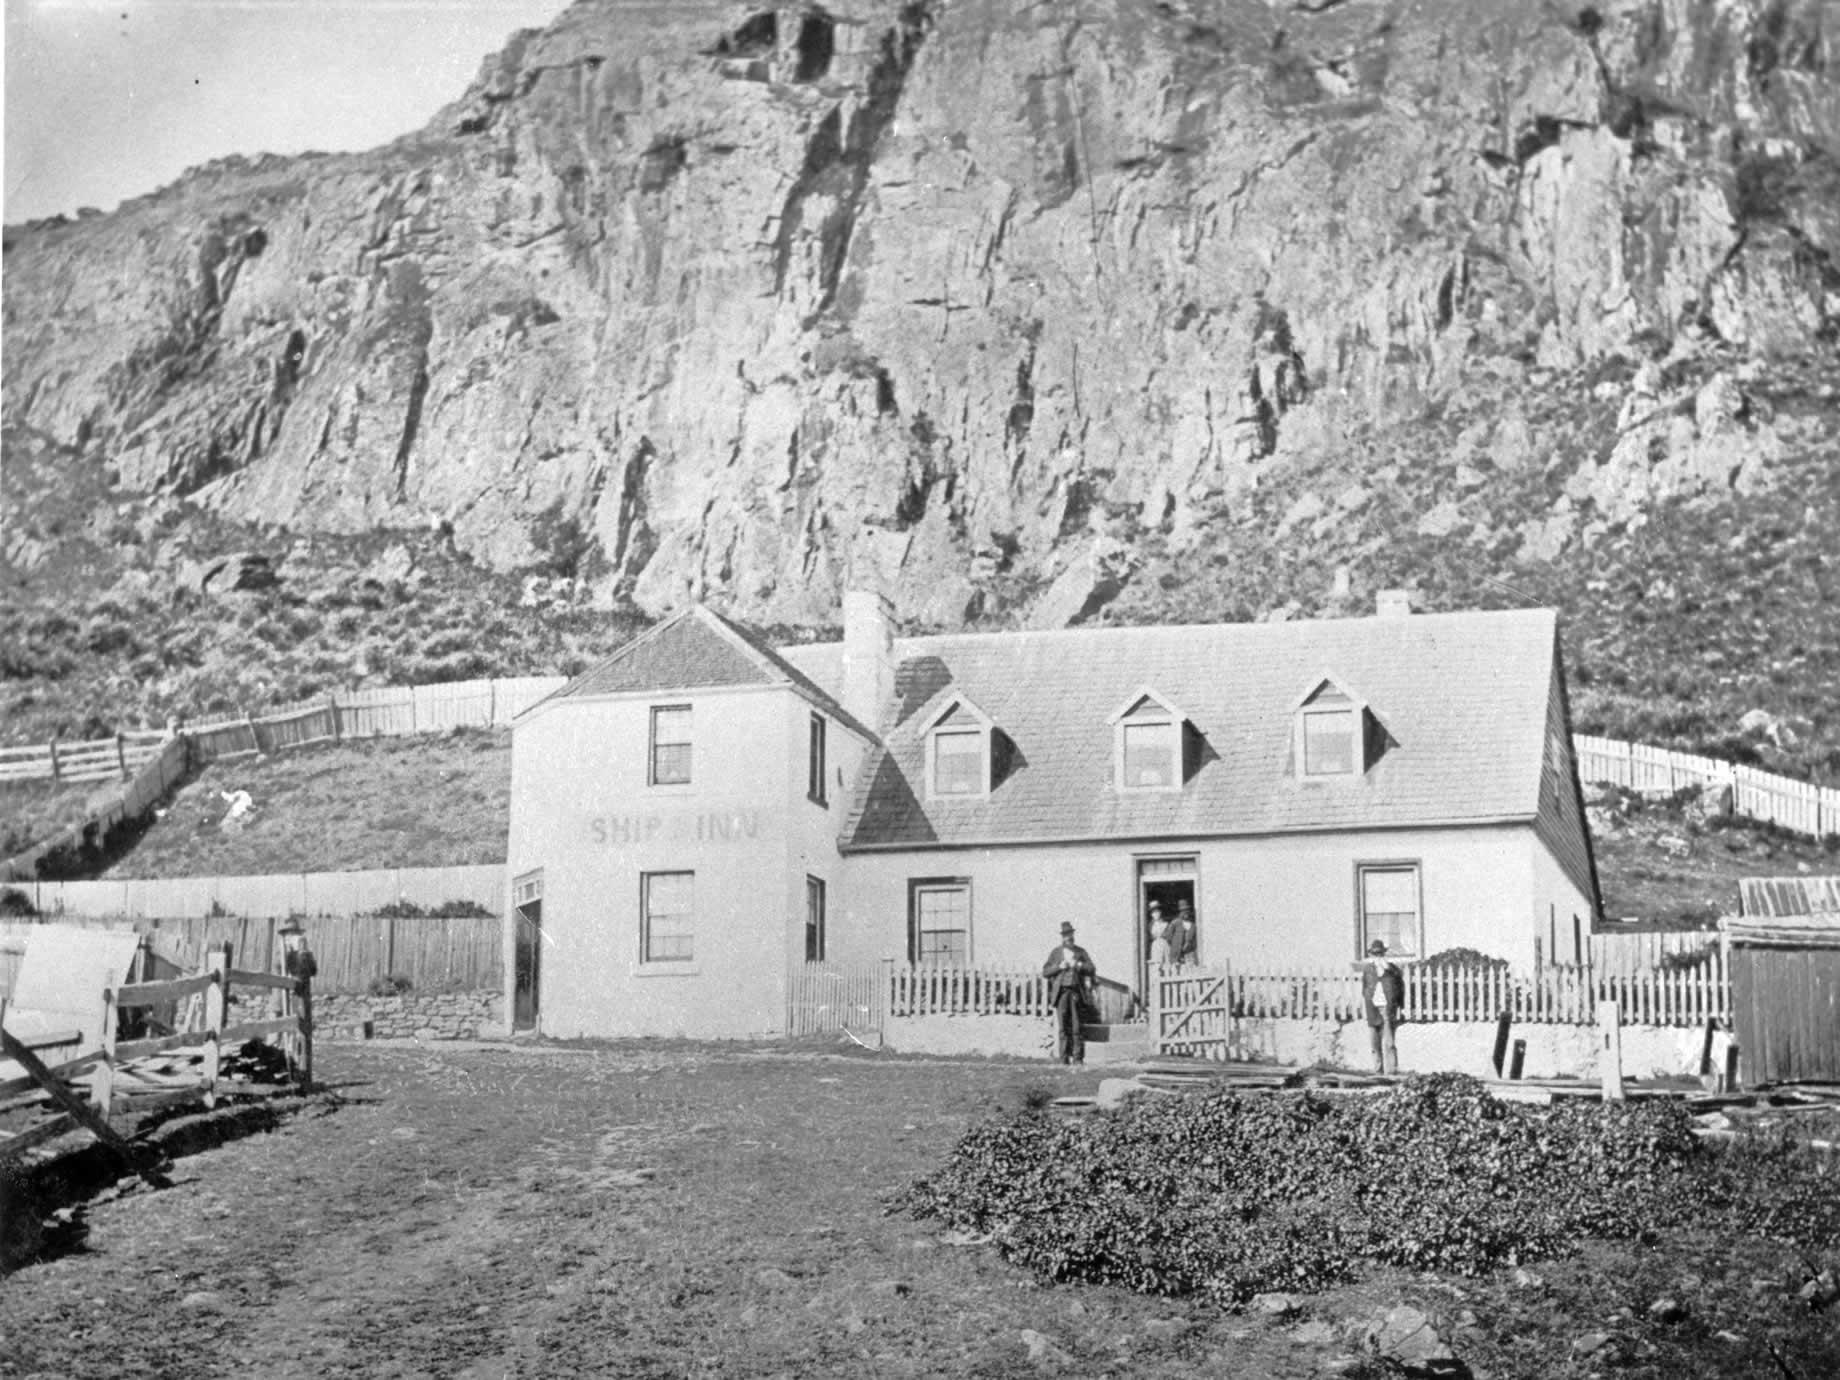 1849 年 Ship Inn 首次获得营业许可，1903 年被出售并改名为湾景旅馆